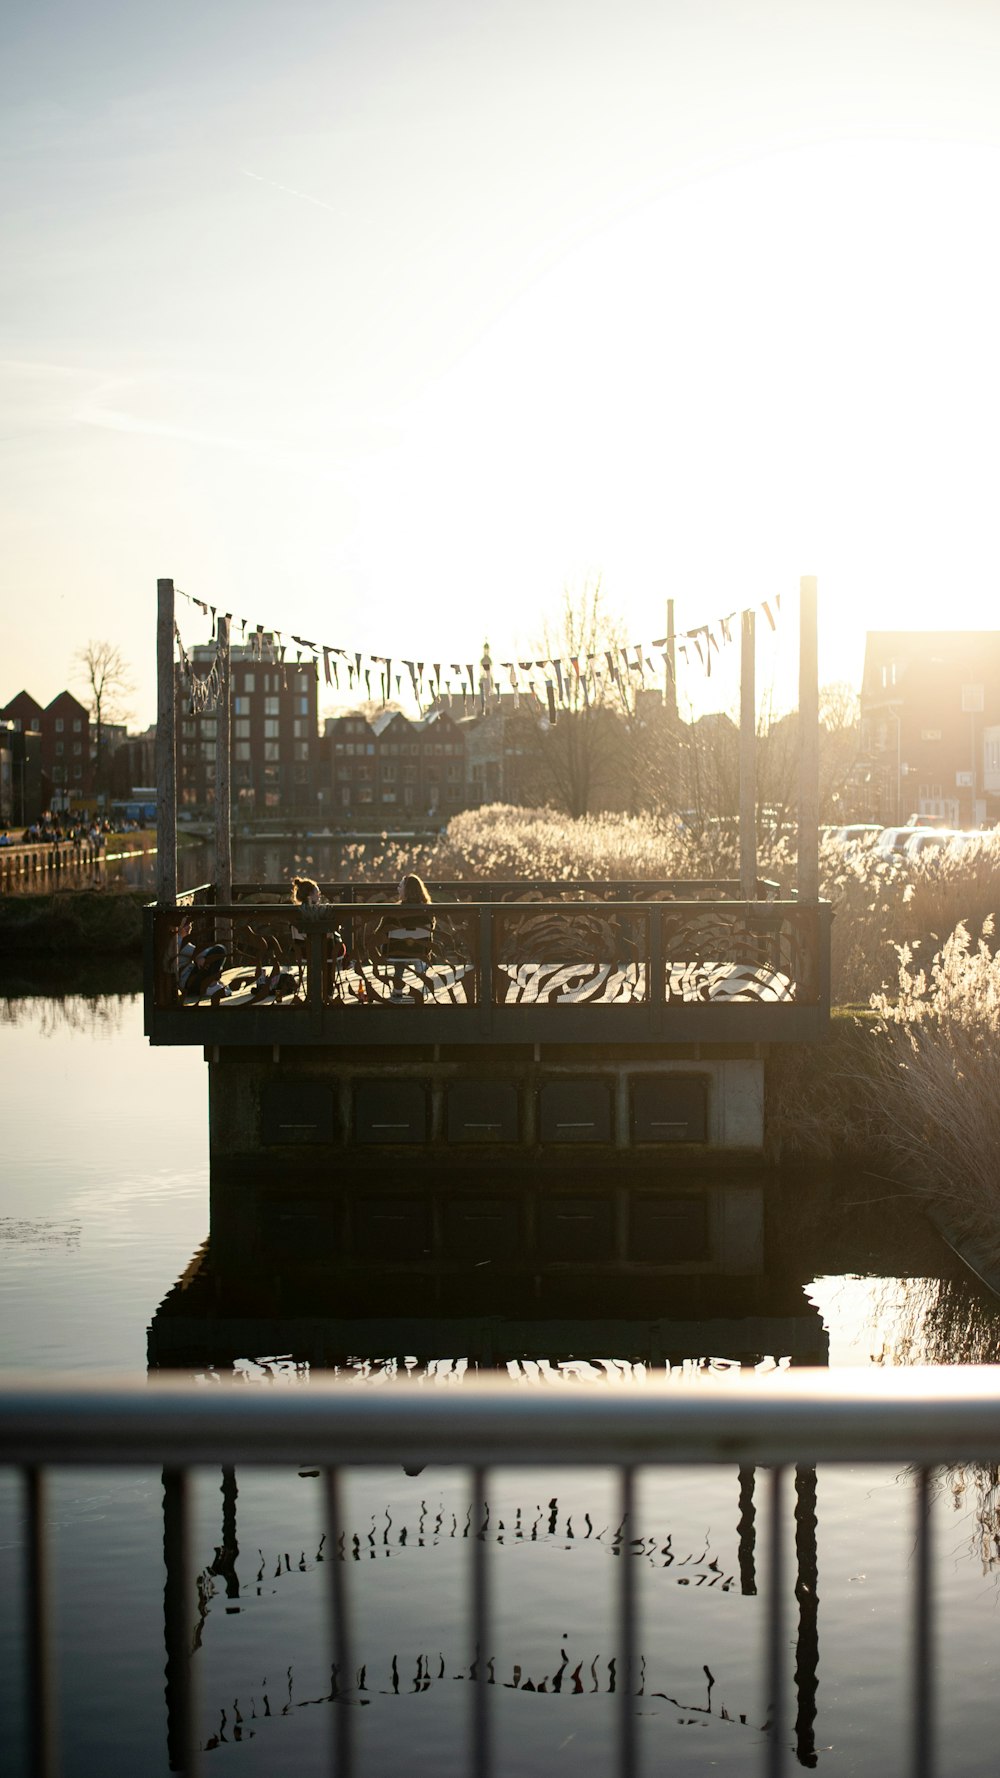 川に架かる橋のグレースケール写真